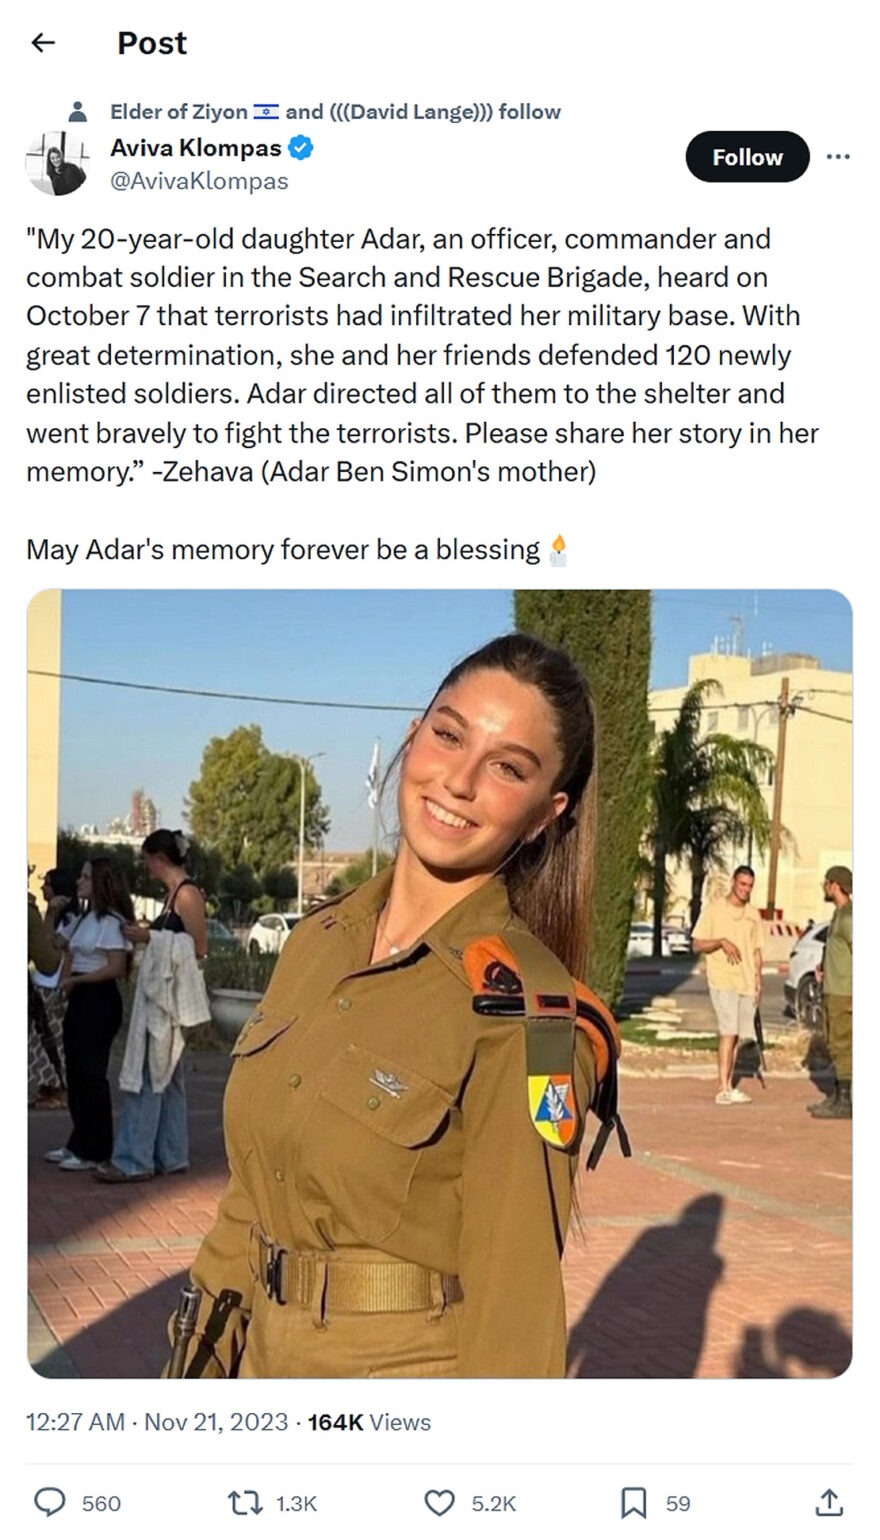 Aviva Klompa-tweet-20November2023-Adar defended 120 newly enlisted soldiers